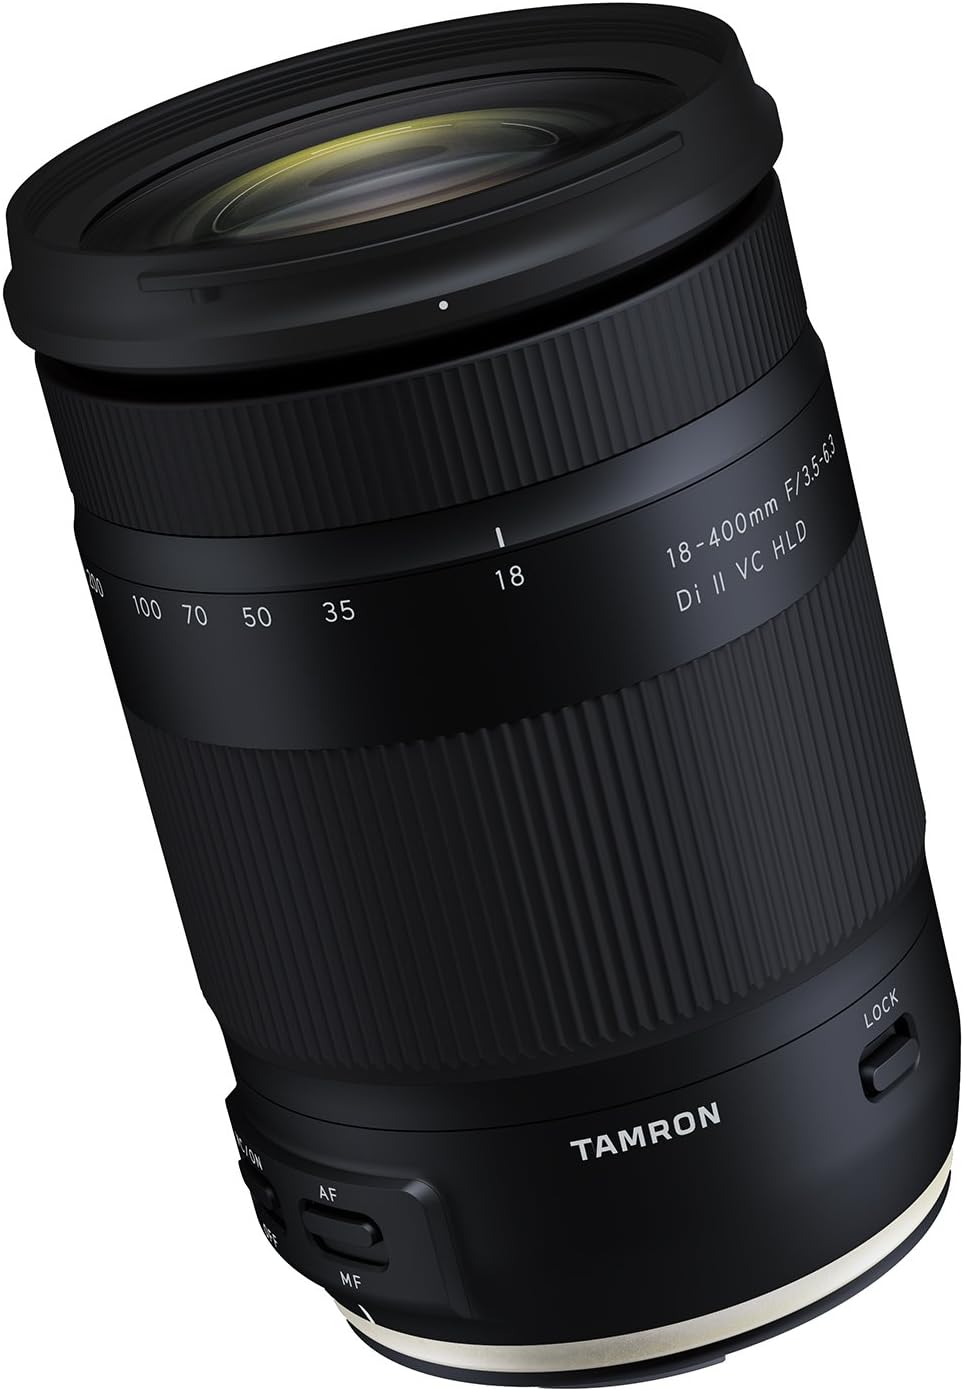 Tamron ef 18-400mm f/3.5-6.3 Lens